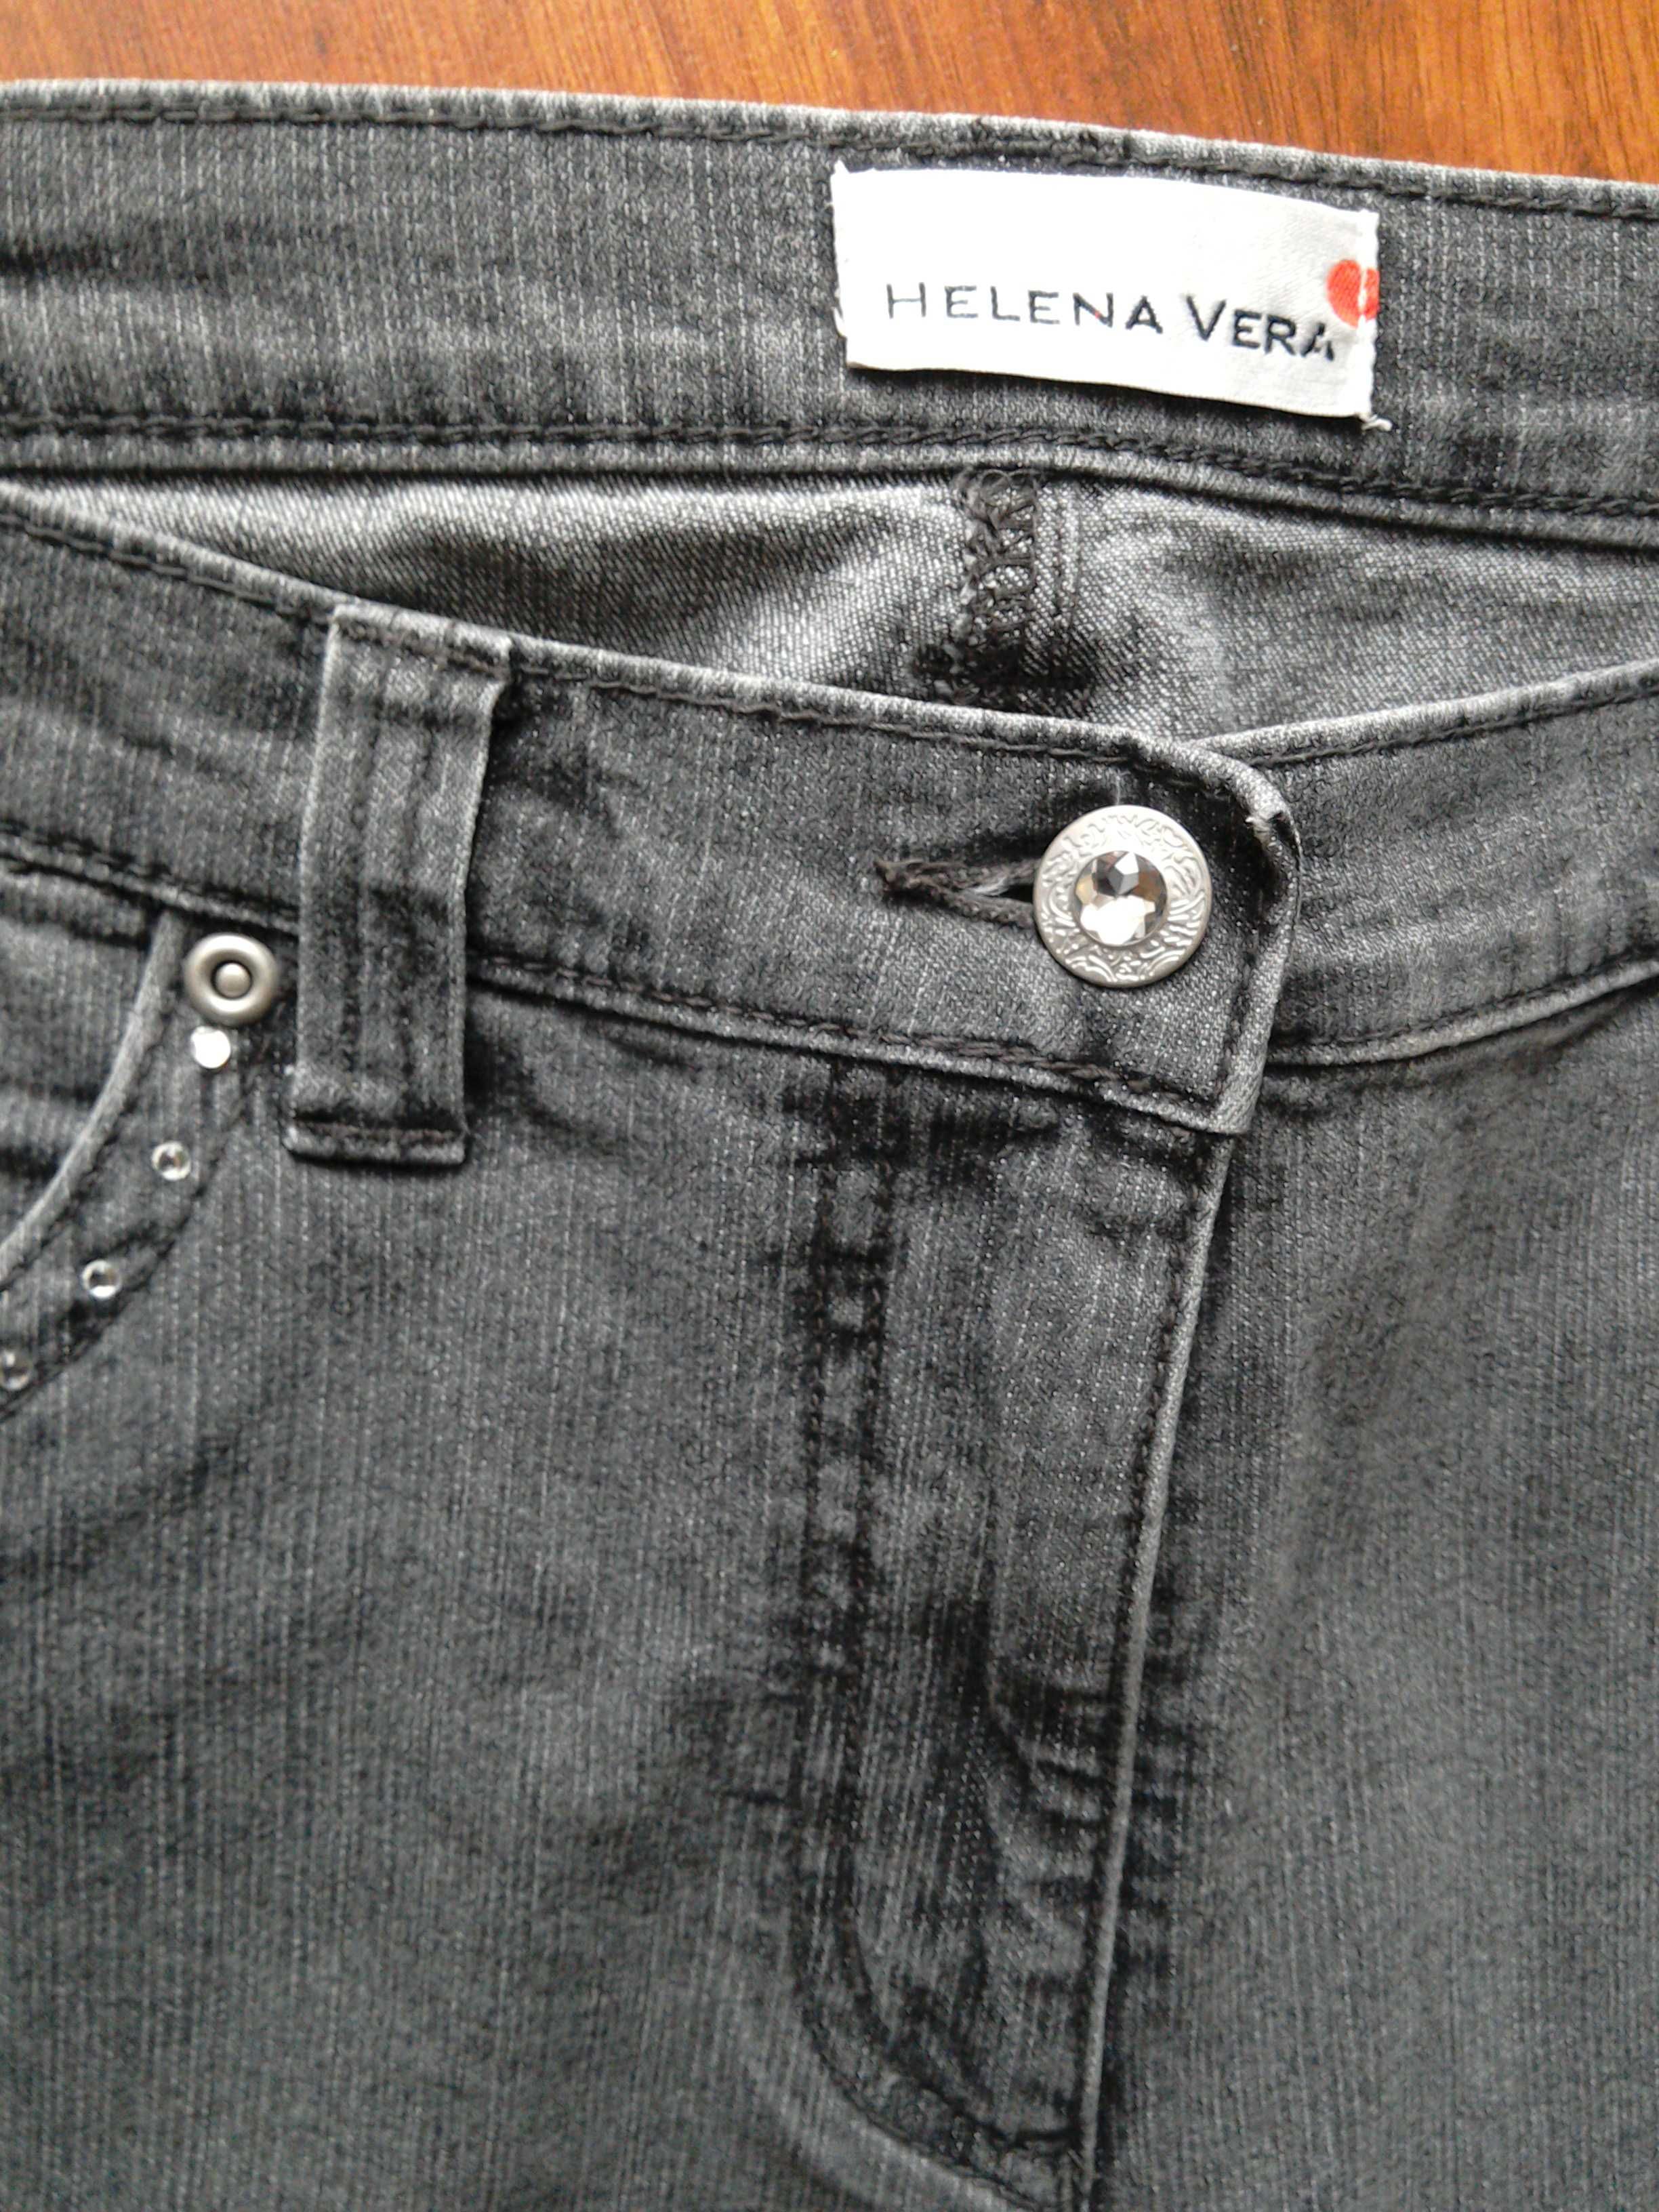 Spodnie damskie jeans w rozm. 42/44 Firma HELENA VERA